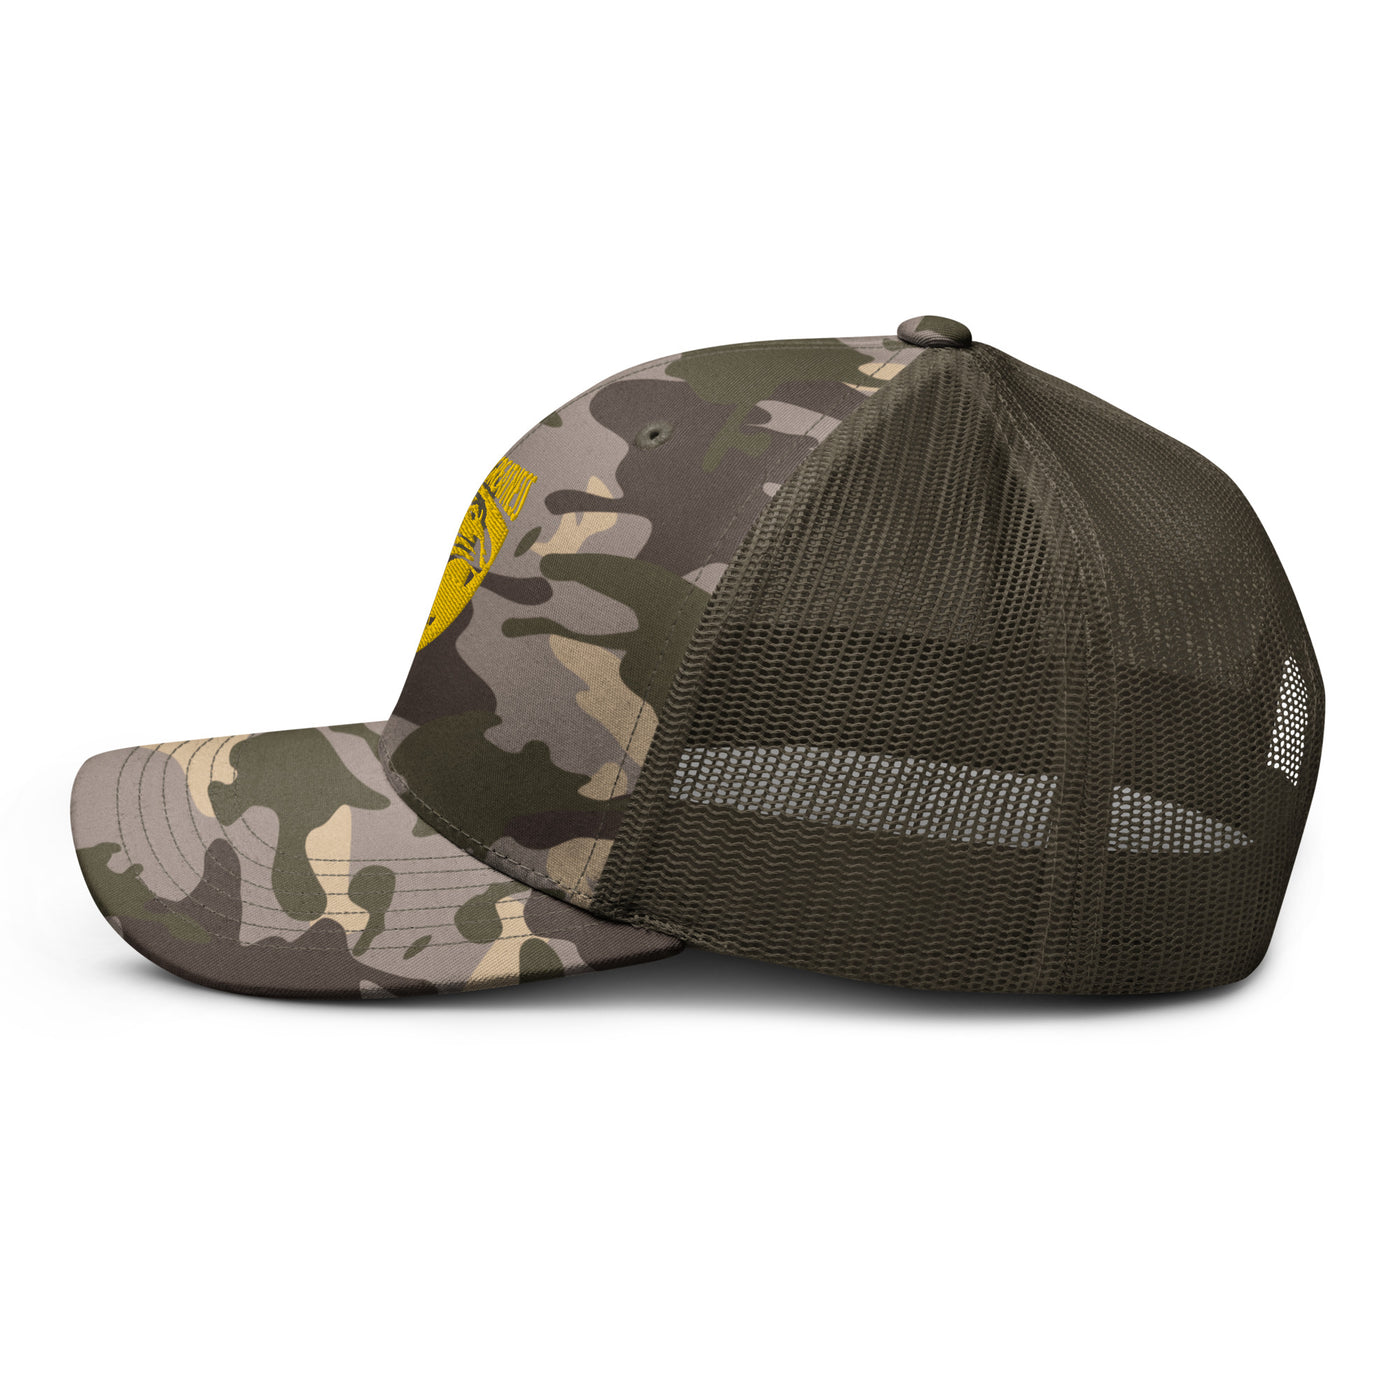 GOG Camouflage trucker hat